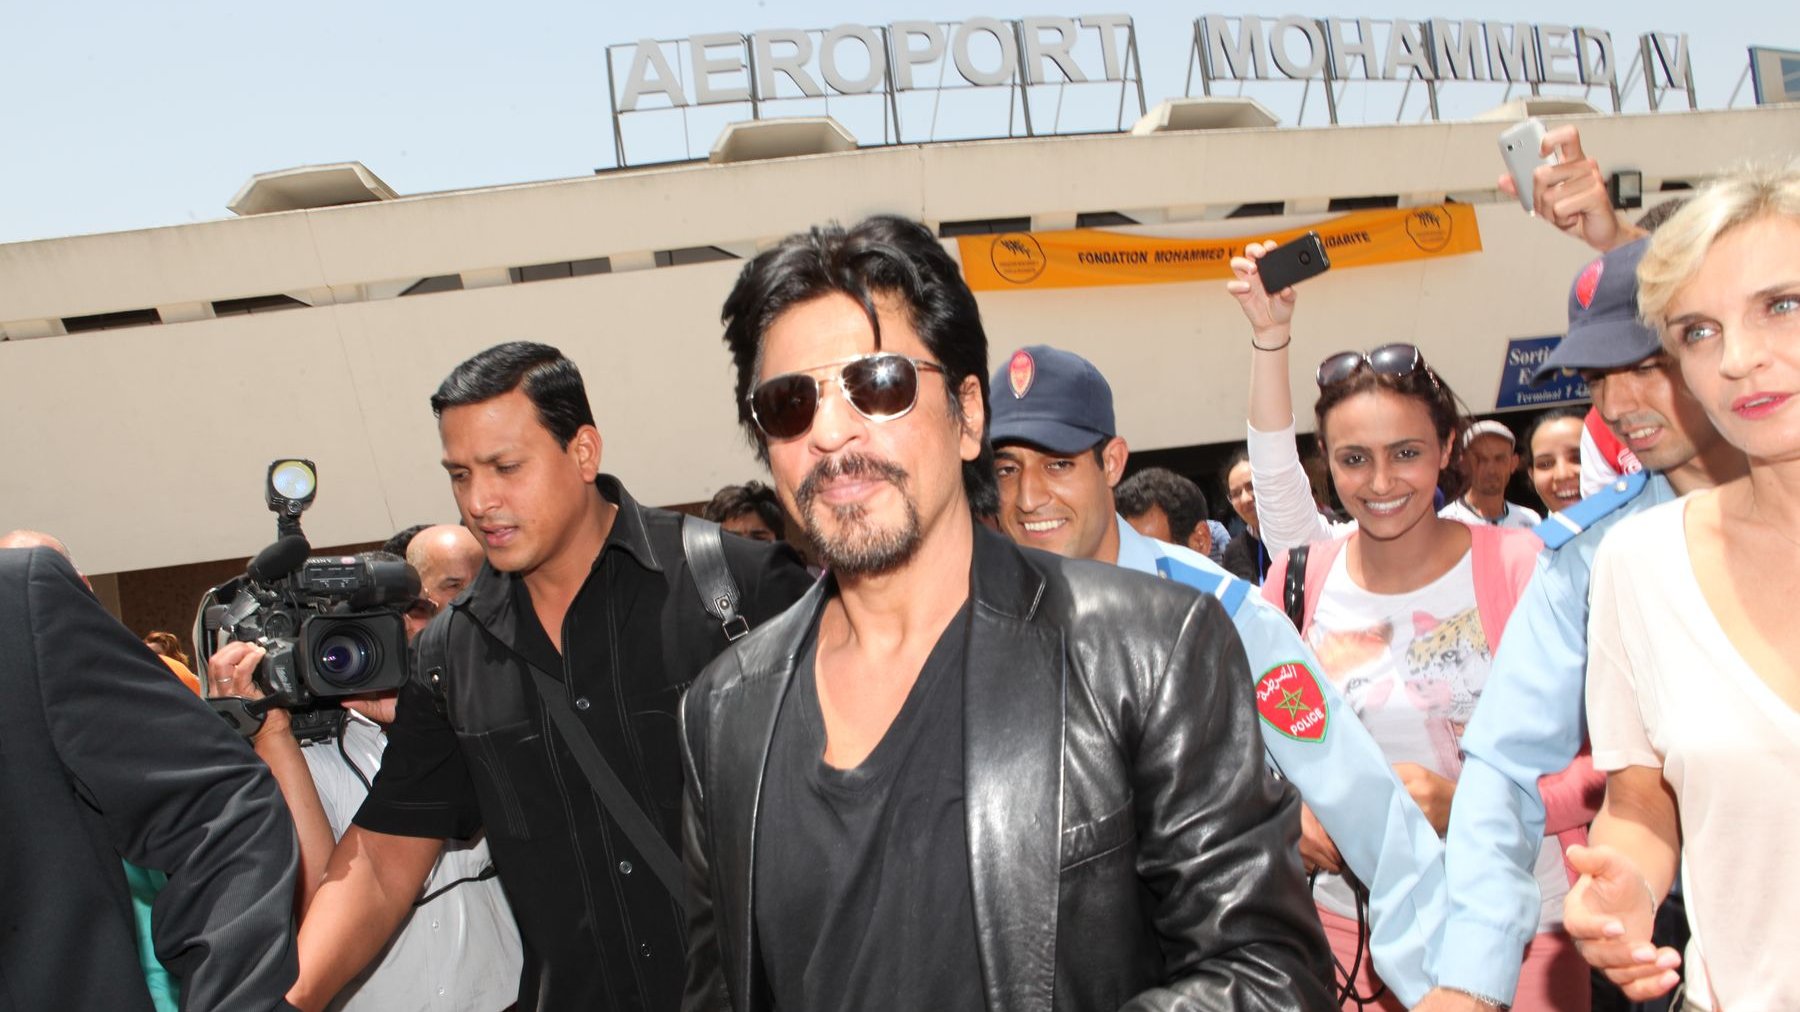 Il y a eu foule ce mercredi matin à l'aéroport Mohammed V. La star indienne a beaucoup de succès au Maroc
